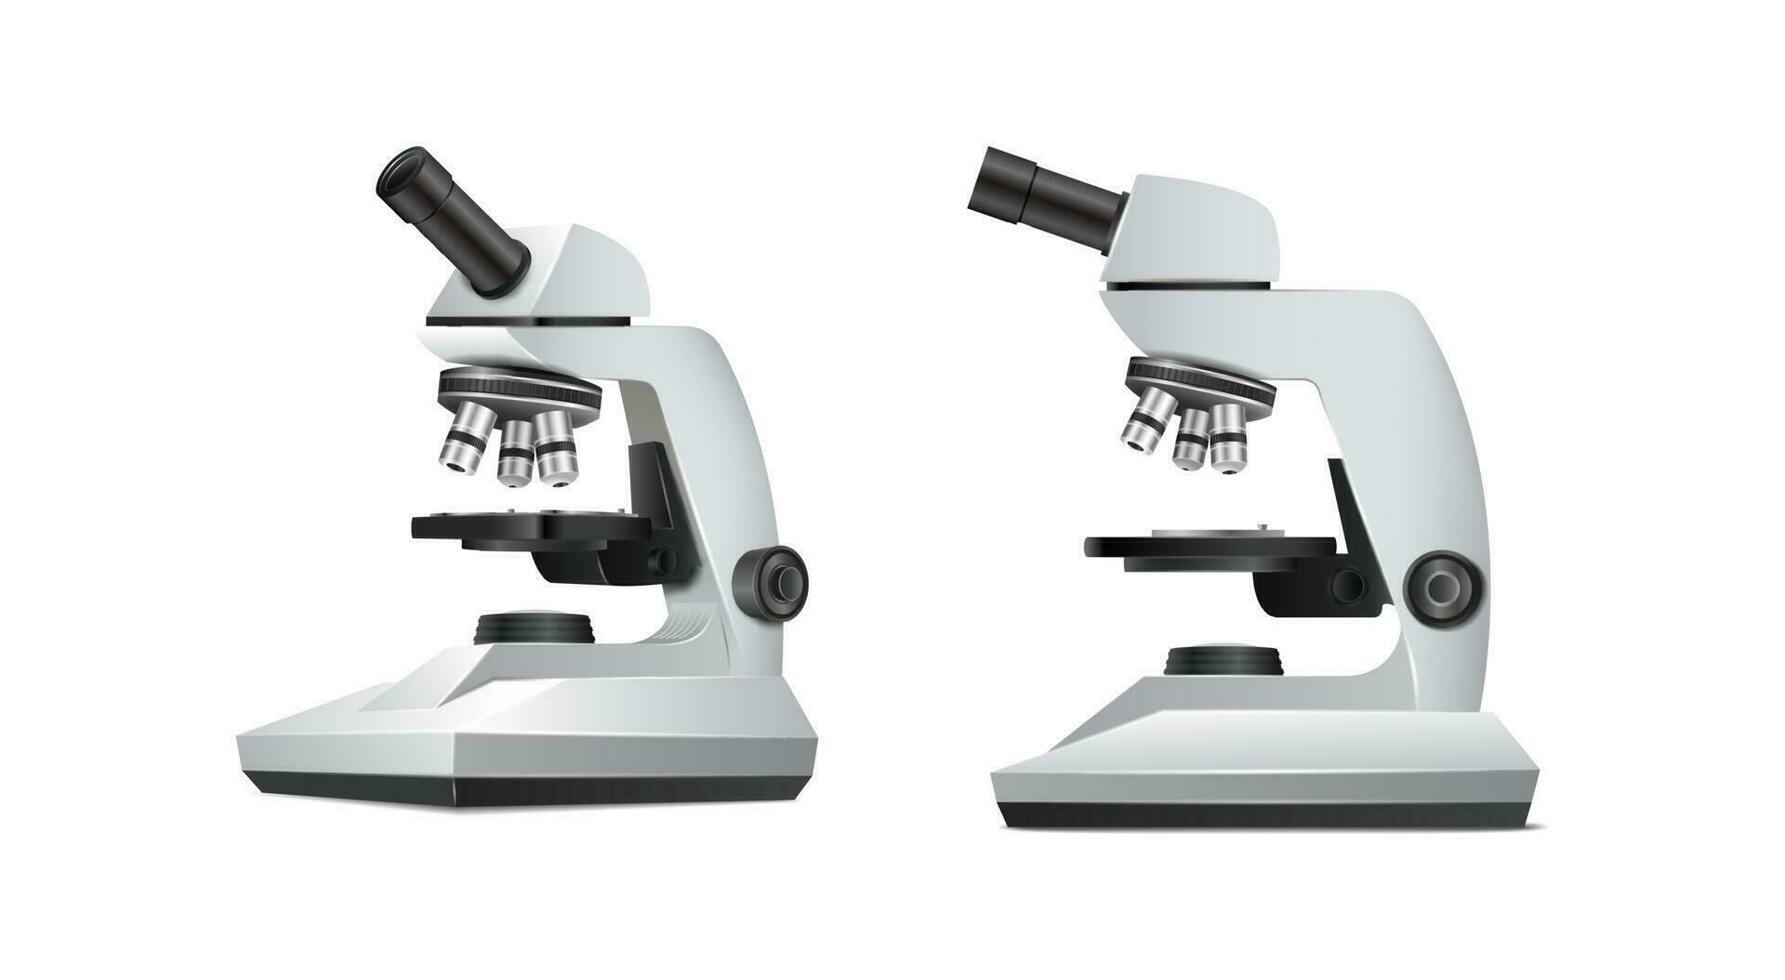 3d realistisch Vektor Symbol. Labor Ausrüstung Mikroskop. Wissenschaft und Biologie Labor, Chemie, pharmazeutische Konzept. Seite und Vorderseite Sicht.